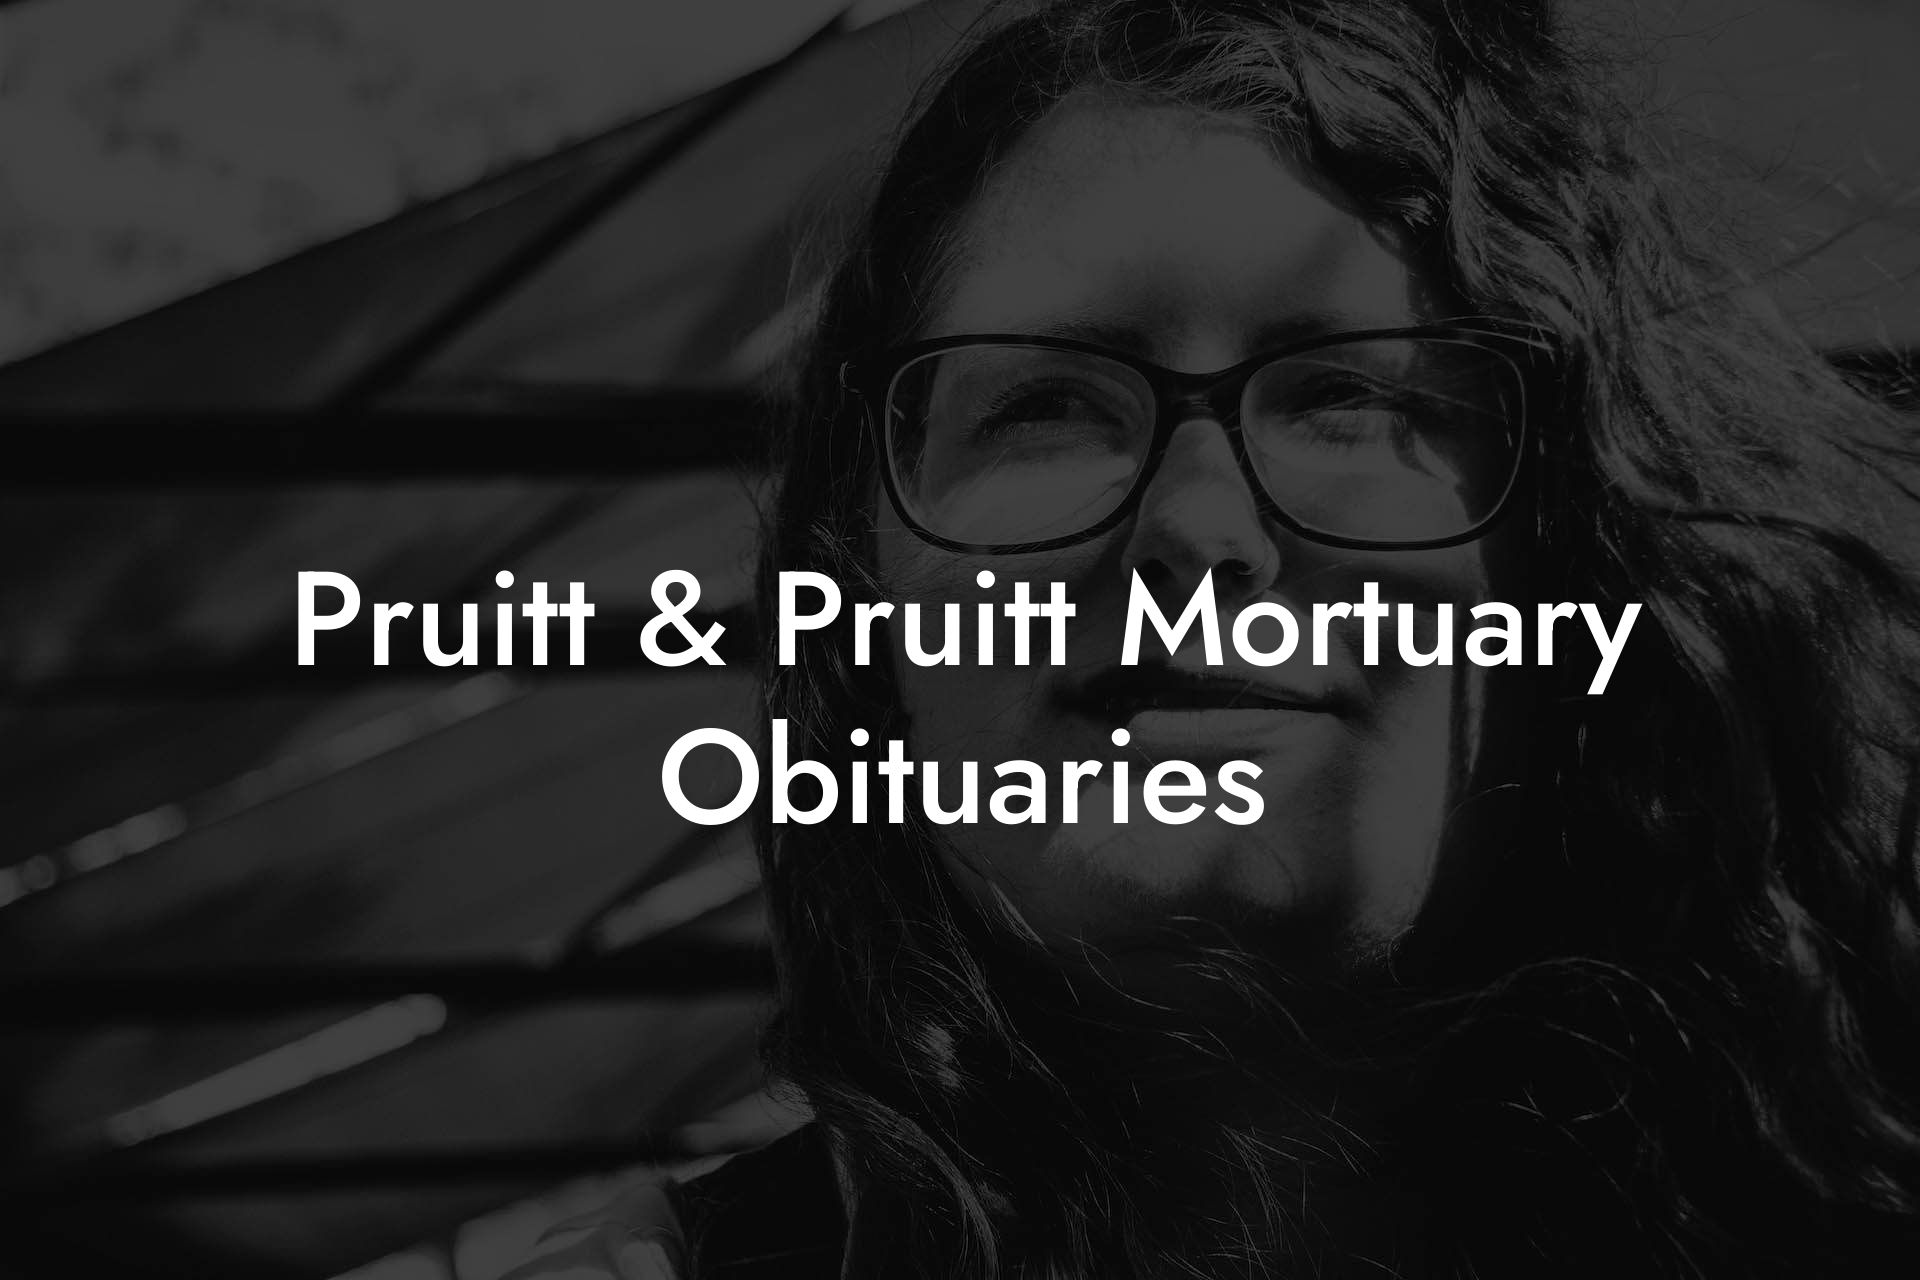 Pruitt & Pruitt Mortuary Obituaries